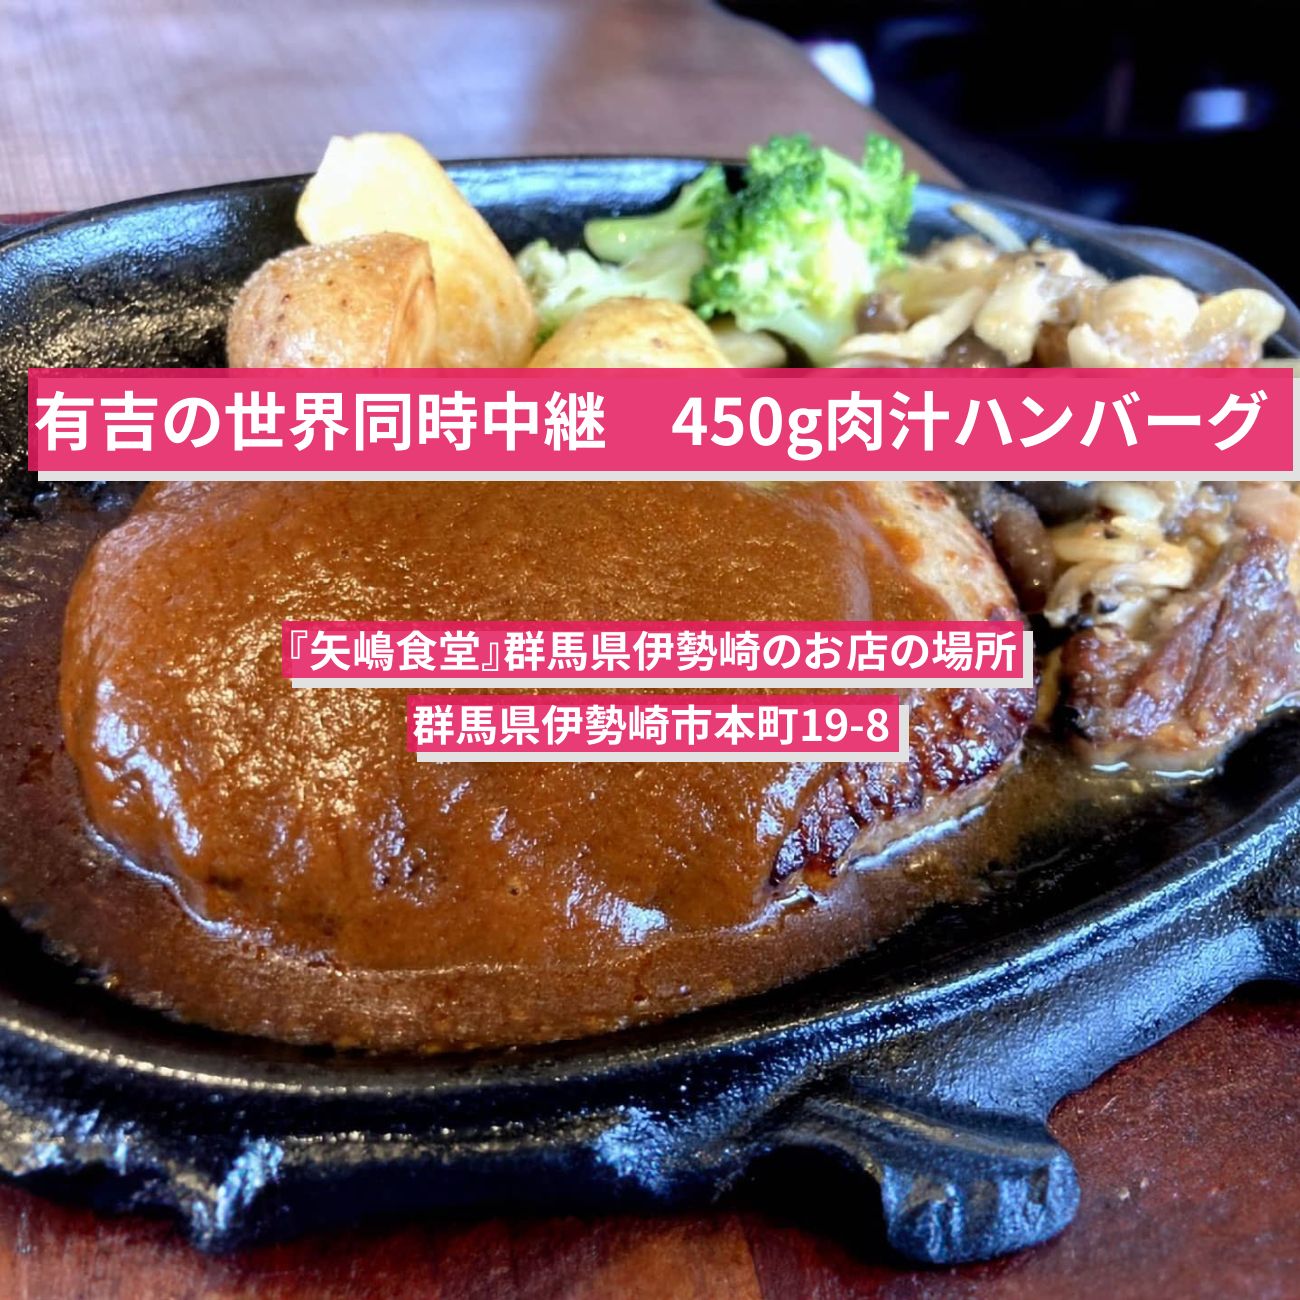 【有吉の世界同時中継】450g肉汁ハンバーグ『矢嶋食堂』群馬県伊勢崎のお店の場所